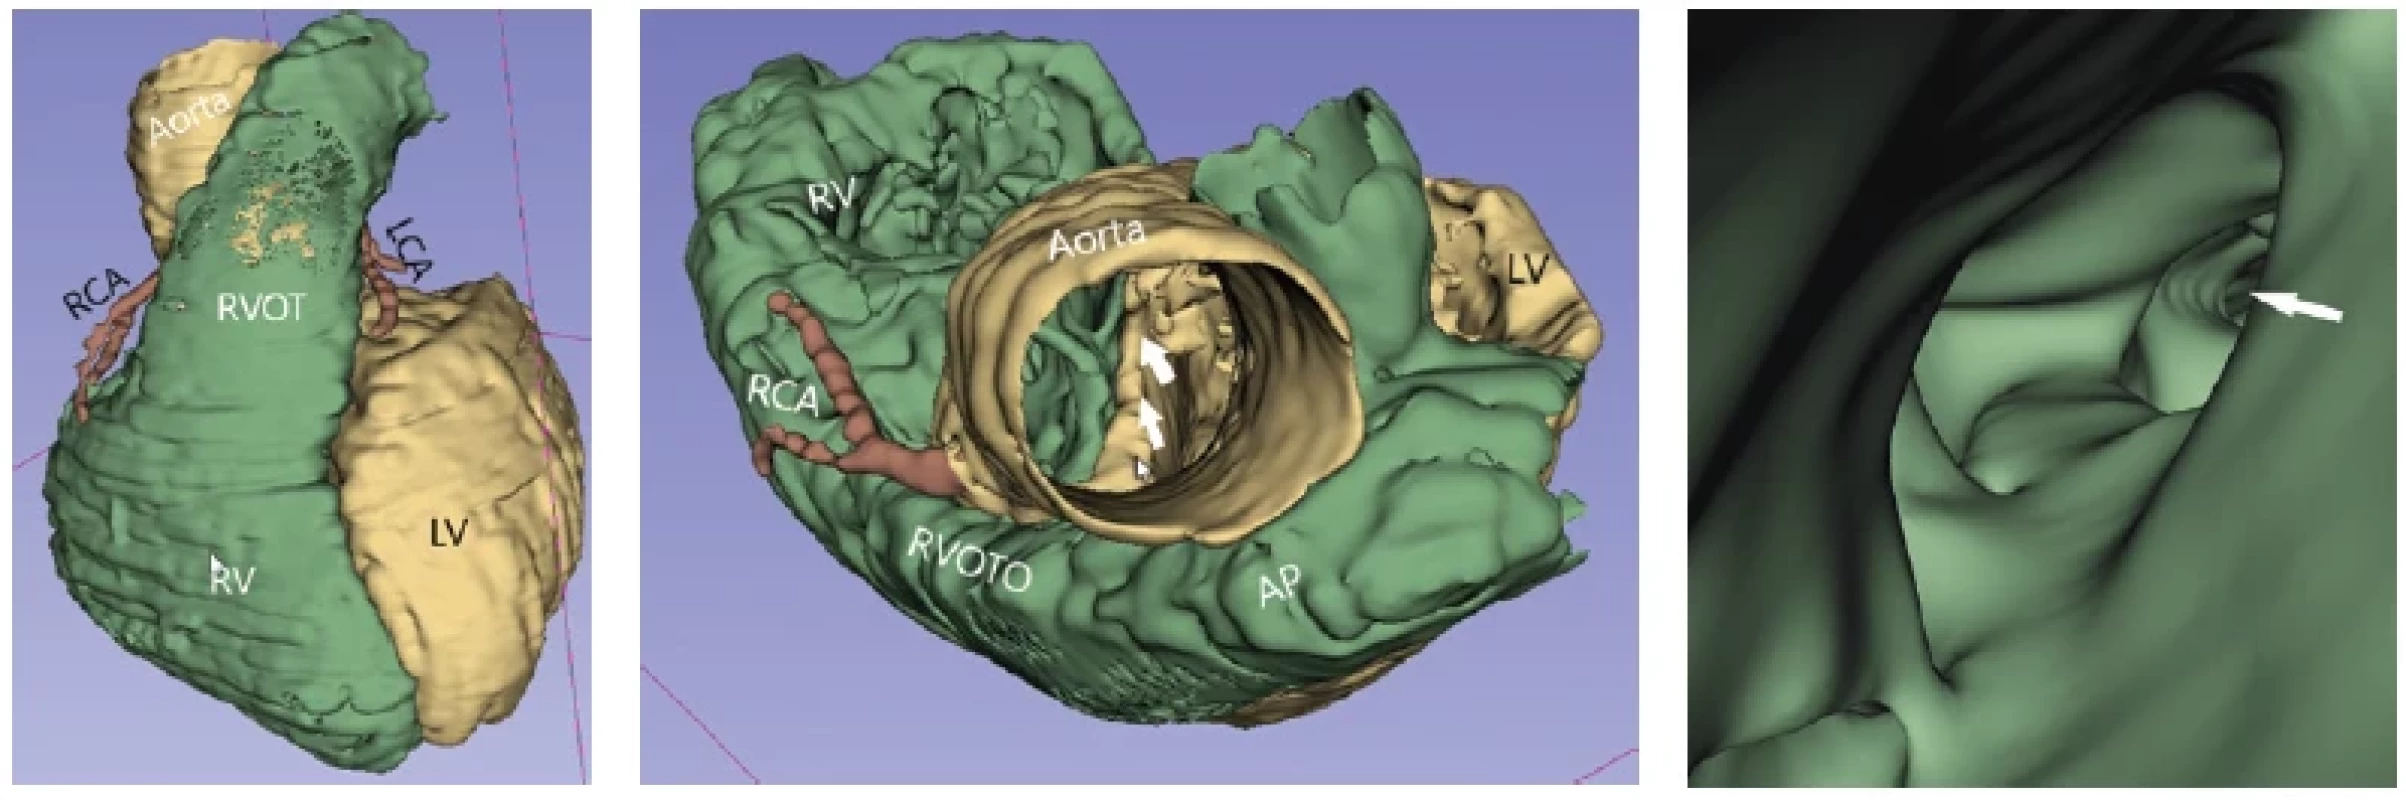 3D virtuálny „reálny“ model extra- aj intrakardiálnych štruktúr u 9-ročného pacienta klinicky sa manifestujúceho centrálnou cyanózou.
Išlo o pacienta s echokardiograficky diagnostikovanou Fallotovou tetralógiou. 3D model bol indikovaný na zobrazenie výtokového
traktu pravej komory (RVOT) a zobrazenie koronárnych artérií s cieľom vylúčenia priebehu ramus interventricularis anterior pred RVOT
(takýto nález kontraindikuje realizáciu transanulárnej záplaty cez pľúcnu chlopňu v rámci kompletnej chirurgickej korekcie chyby). Obrázok
vľavo: anteriórny pohľad. Zobrazené normálne odstupy a priebehy koronárnych artérií. Stredný obrázok: pohľad zhora. Cez ascendentnú
aortu pri pohľade nadol do srdca je vidieť hornú hranu medzikomorového septa (zobrazená bielymi šípkami), nad ktorou sa nachádza defekt
komorového septa, kedže pri pohľade z aorty je vidieť do oboch srdcových komôr. Zároveň sa vizualizuje užší výtokový trakt pravej komory
(RVOTO). Obrázok vpravo: detailný pohľad do stenotického RVOTO z pľúcnice (pohľad zhora nadol), v ktorom je vidieť početné svalové
trabekuly. Biela šípka ukazuje na vyústenie stenotického RVOTO smerom do pravej komory (RV). Na základe analýzy 3D modelu bola indikovaná
kompletná chirurgická korekcia pozostávajúca z uzáveru defeku komorového septa pomocou záplaty, z resekcie svalových trabekúl
v RVOT a z realizácie transanulárnej záplaty cez anulus pľúcnej chlopne s cieľom rozšírenia pľúcnice.